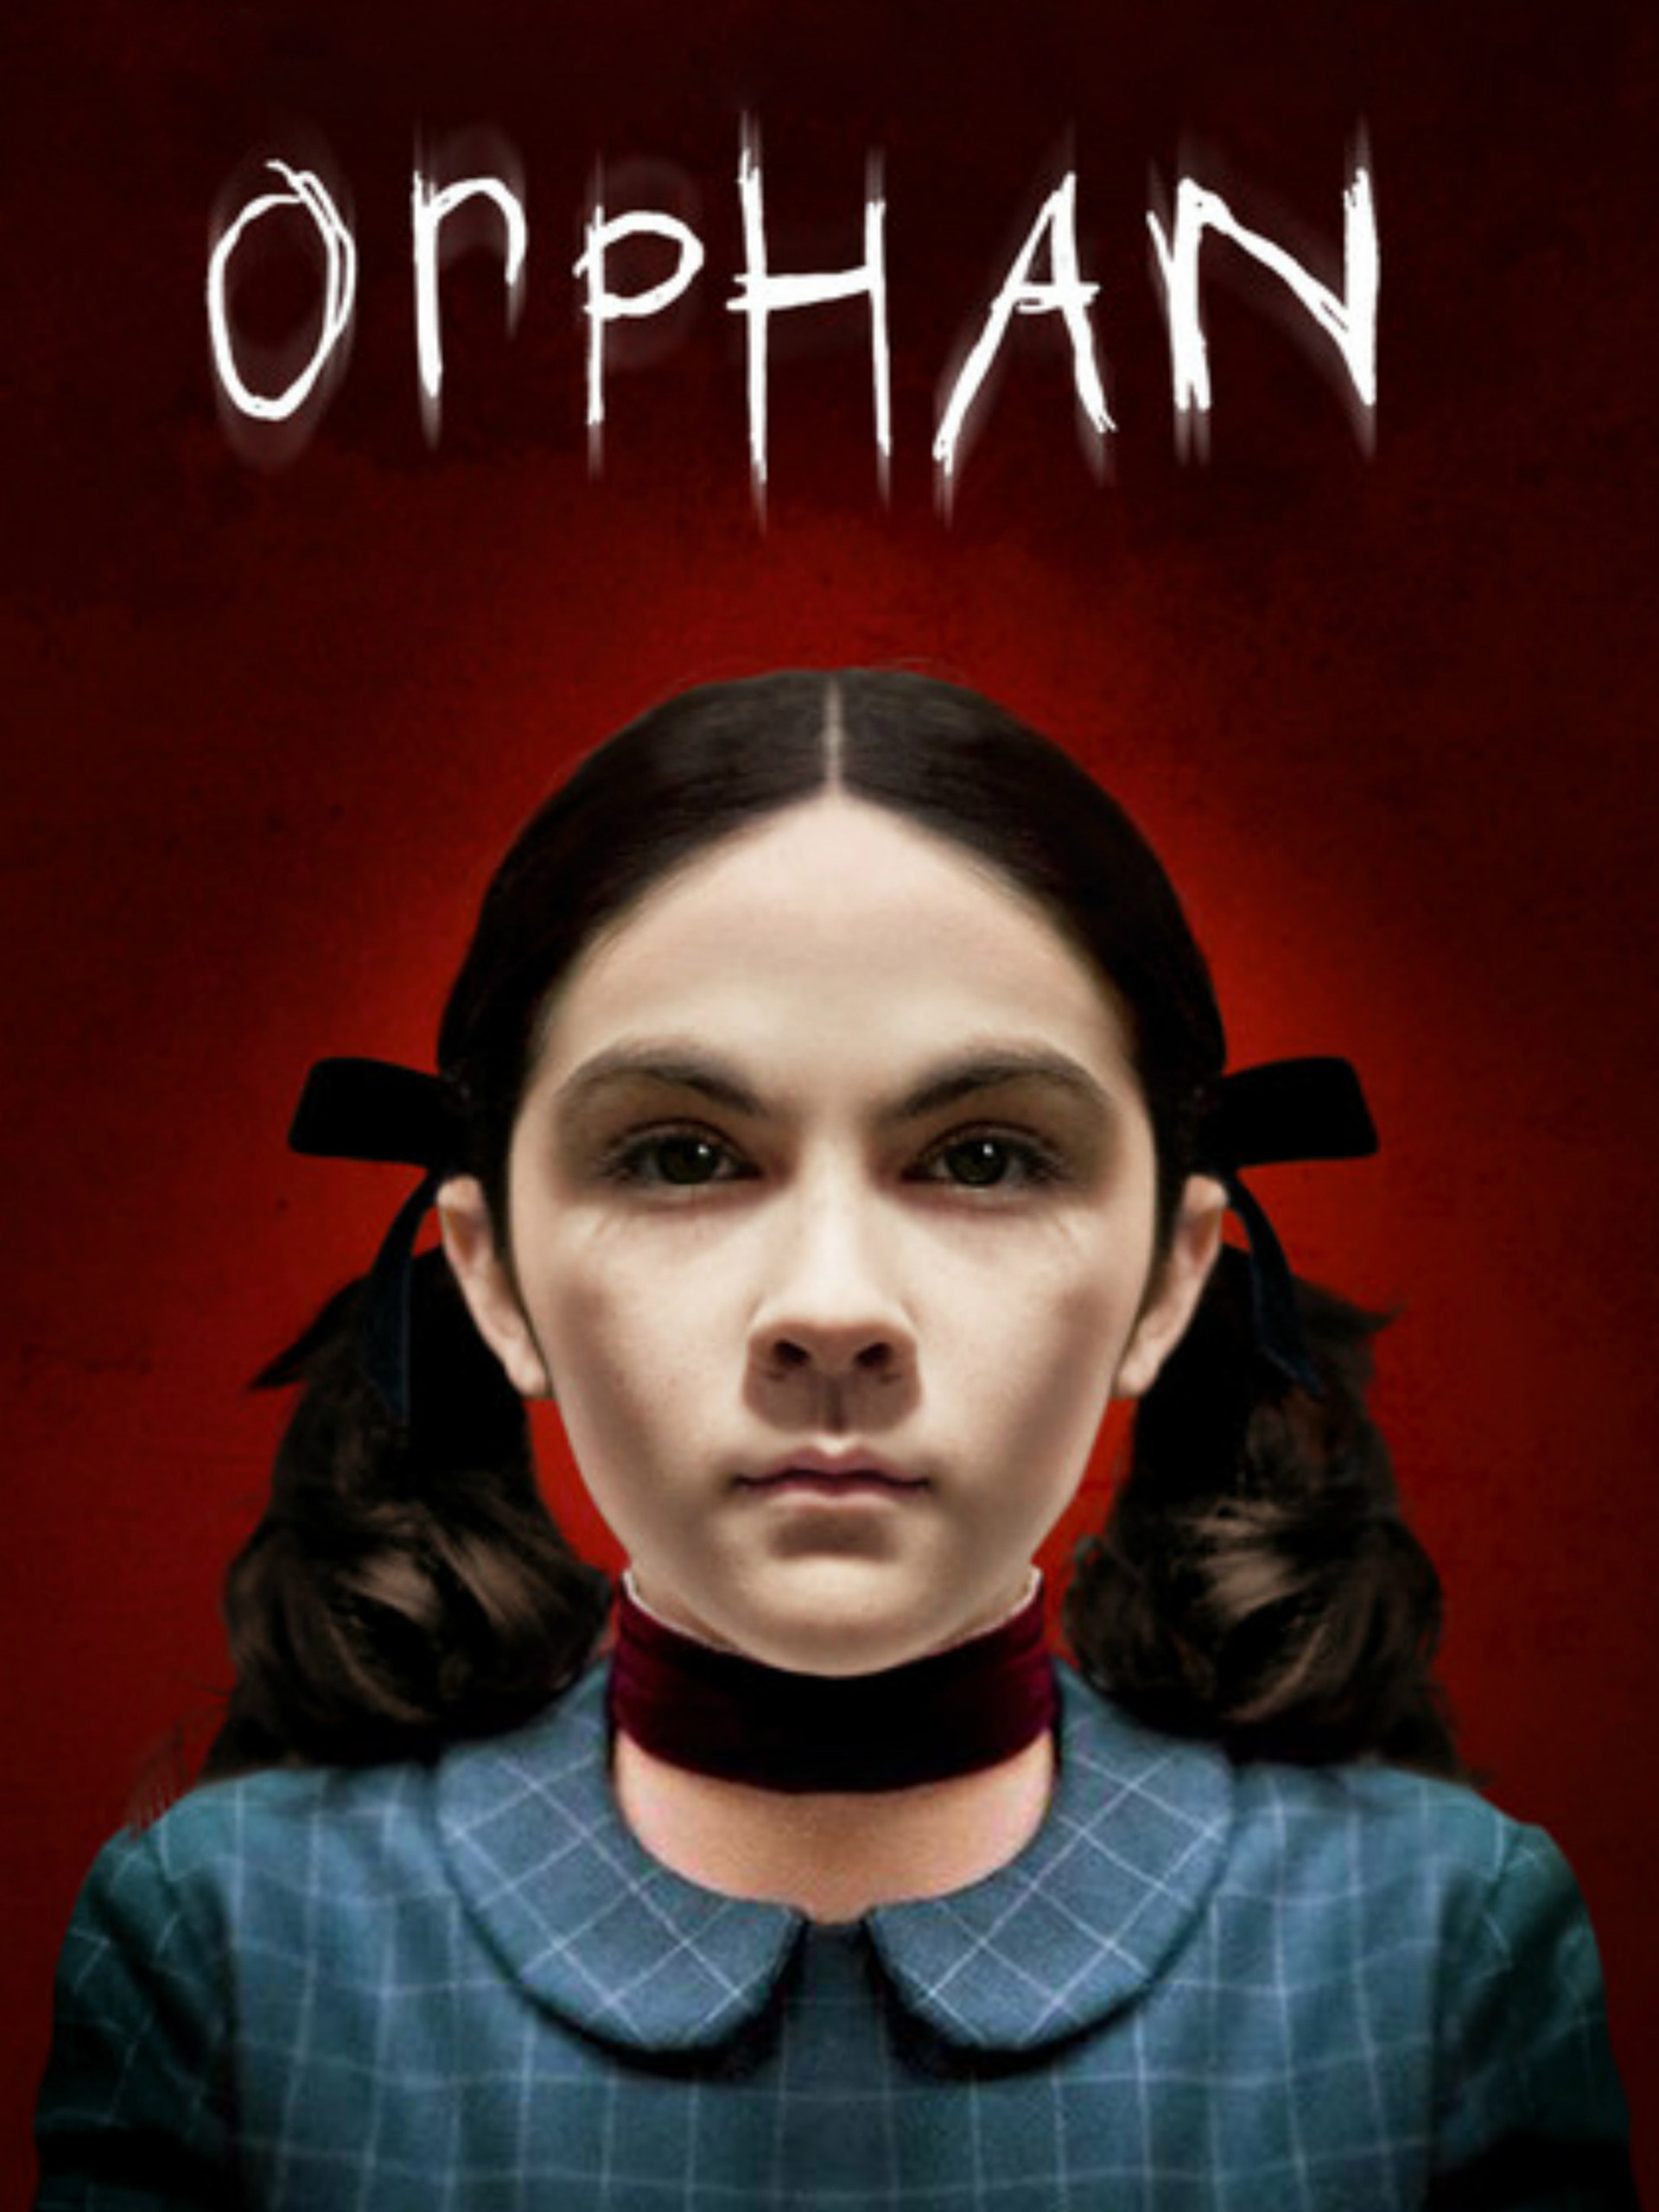 ORPHAN (2009) ออร์แฟน เด็กนรก พากย์ไทย